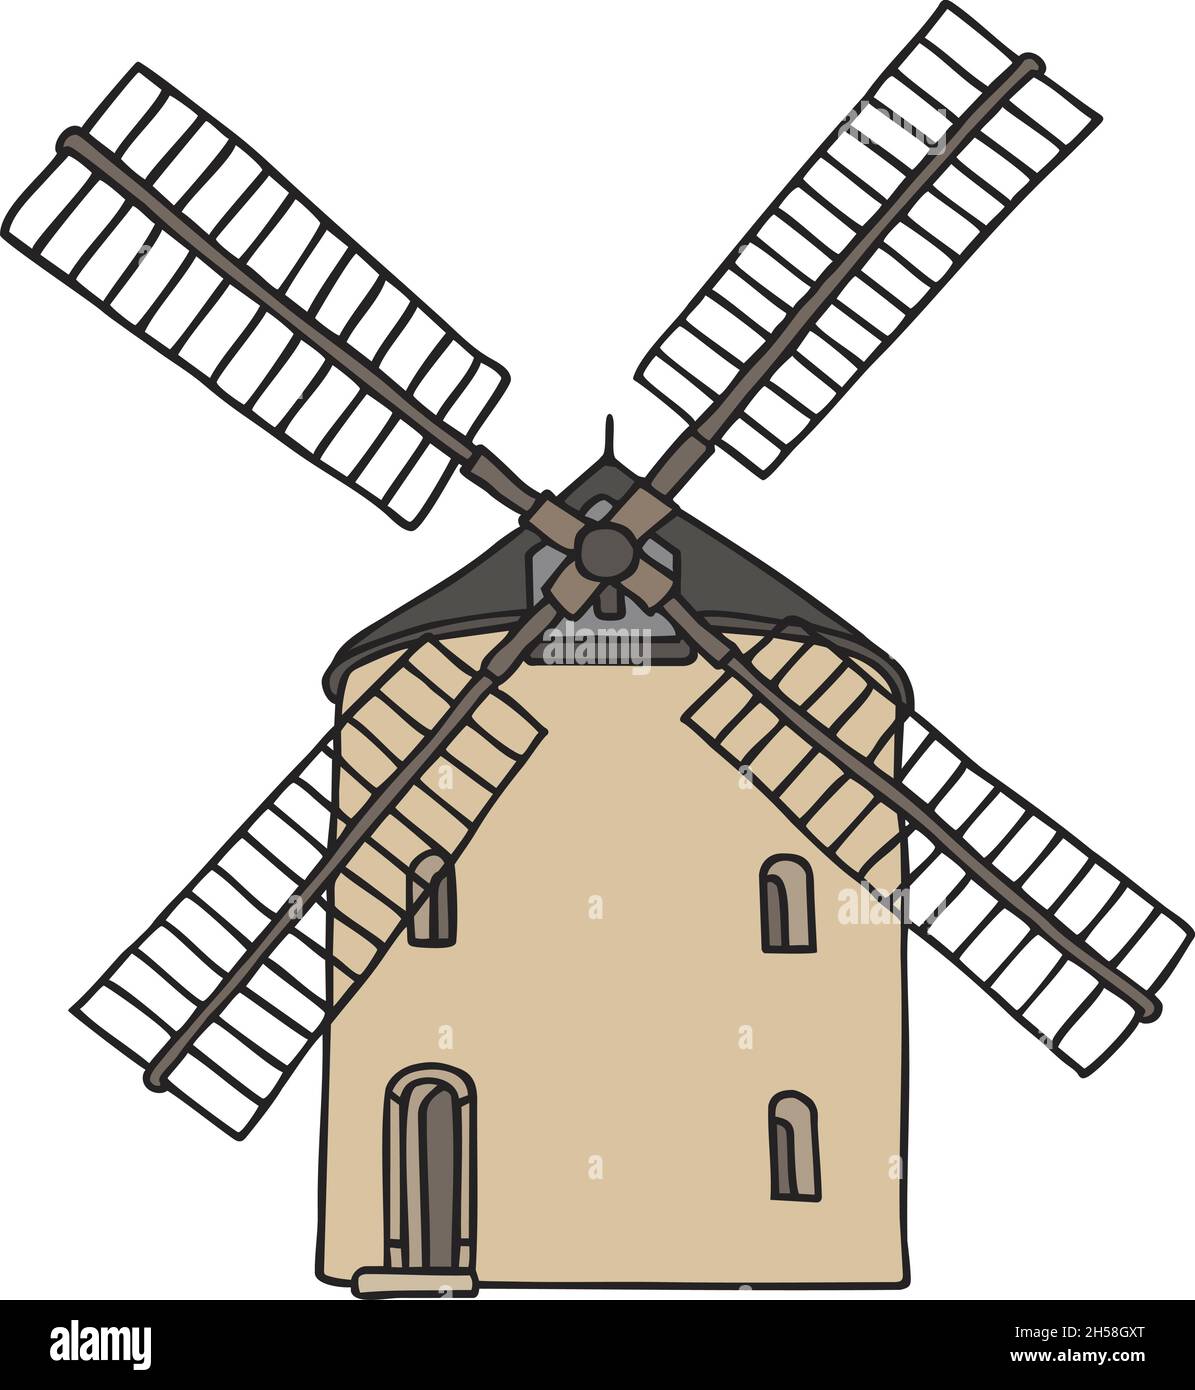 Il disegno a mano vettorizzato di un vecchio mulino a vento in pietra Illustrazione Vettoriale